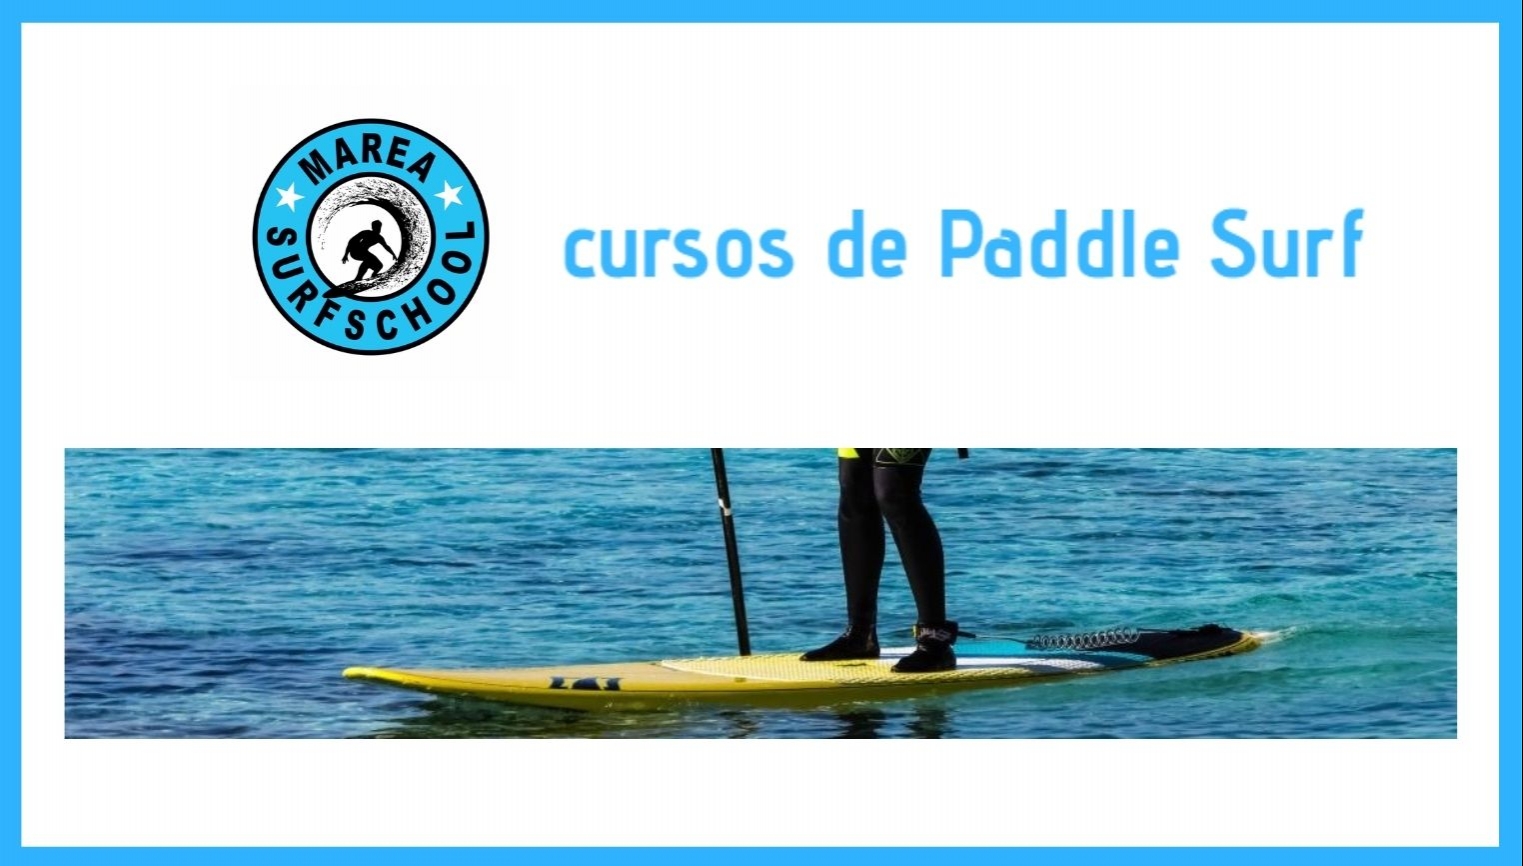 CURSOS DE PADDLE SURF - foto 1/1